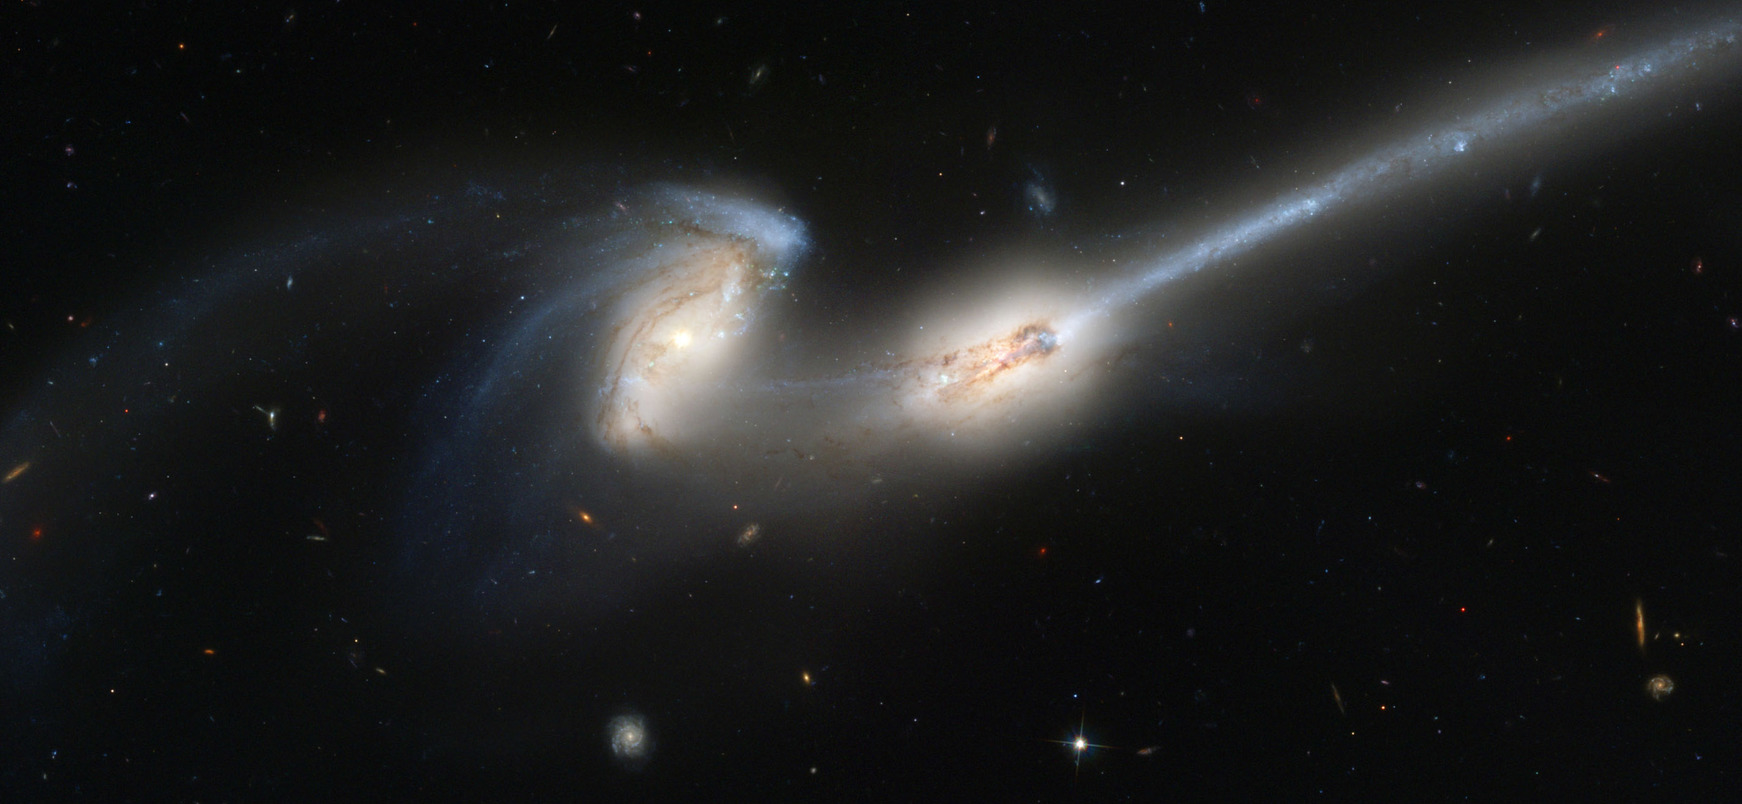 SluÄŤovĂˇnĂ­ galaxiĂ­ pĹ™istiĹľeno pĹ™i ÄŤinu kosmickĂ˝m dalekohledem Hubble Space Telescope.Â (Kredit: Wikimedia)